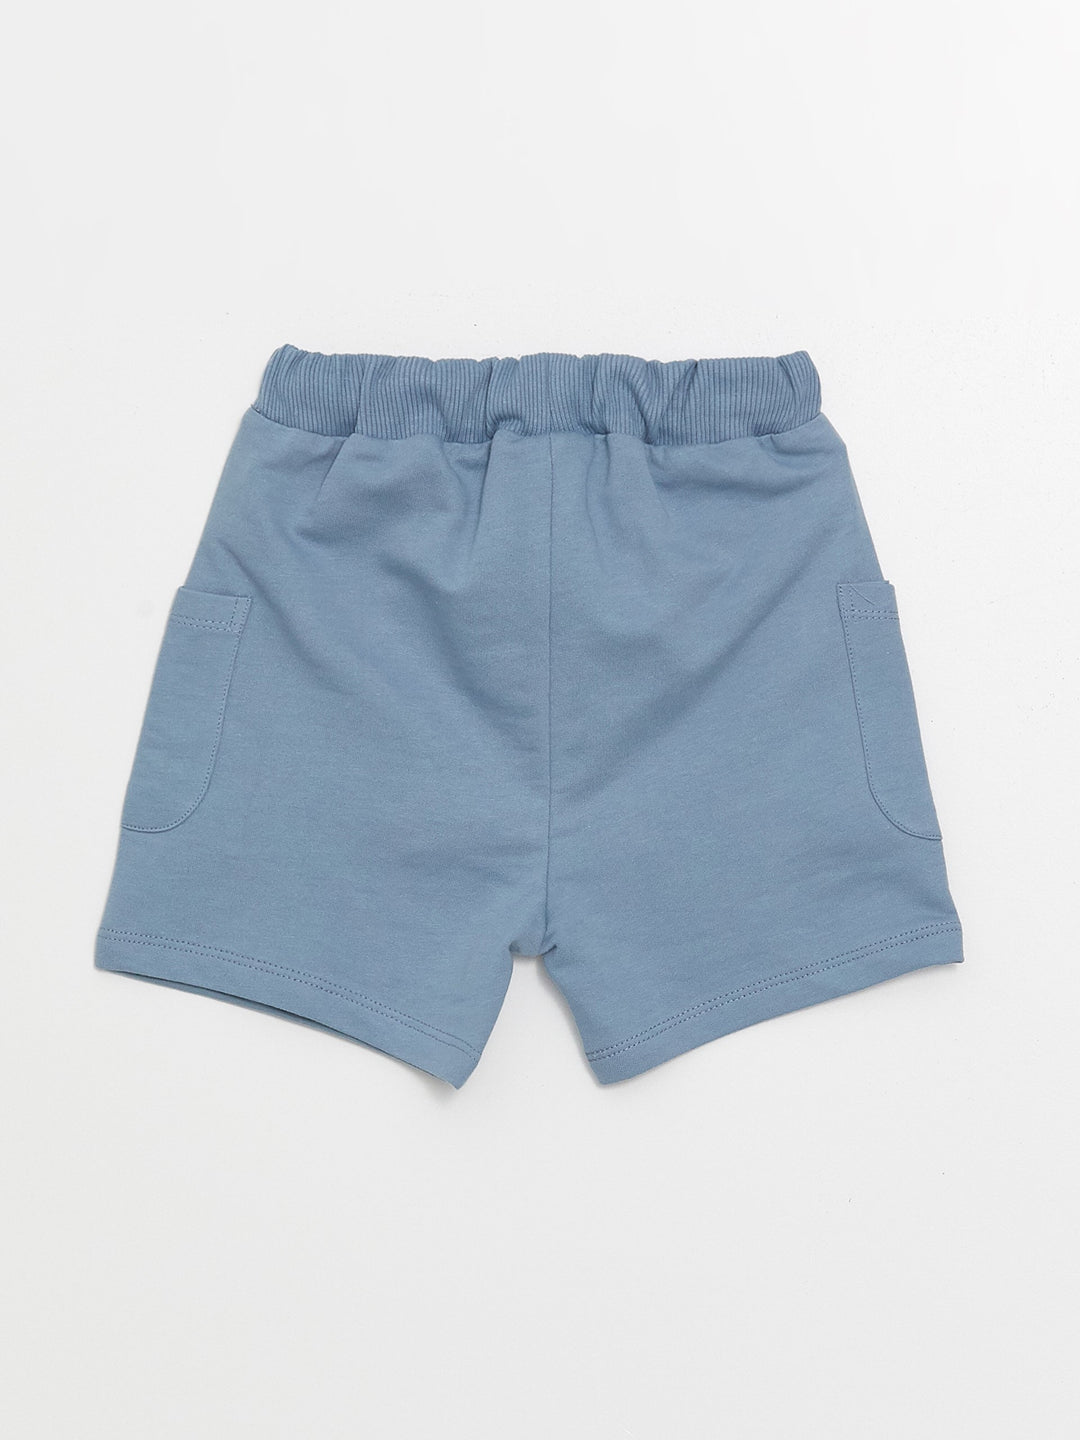 Basic Baby Boy Shorts with Elastic Waist, 2-pack